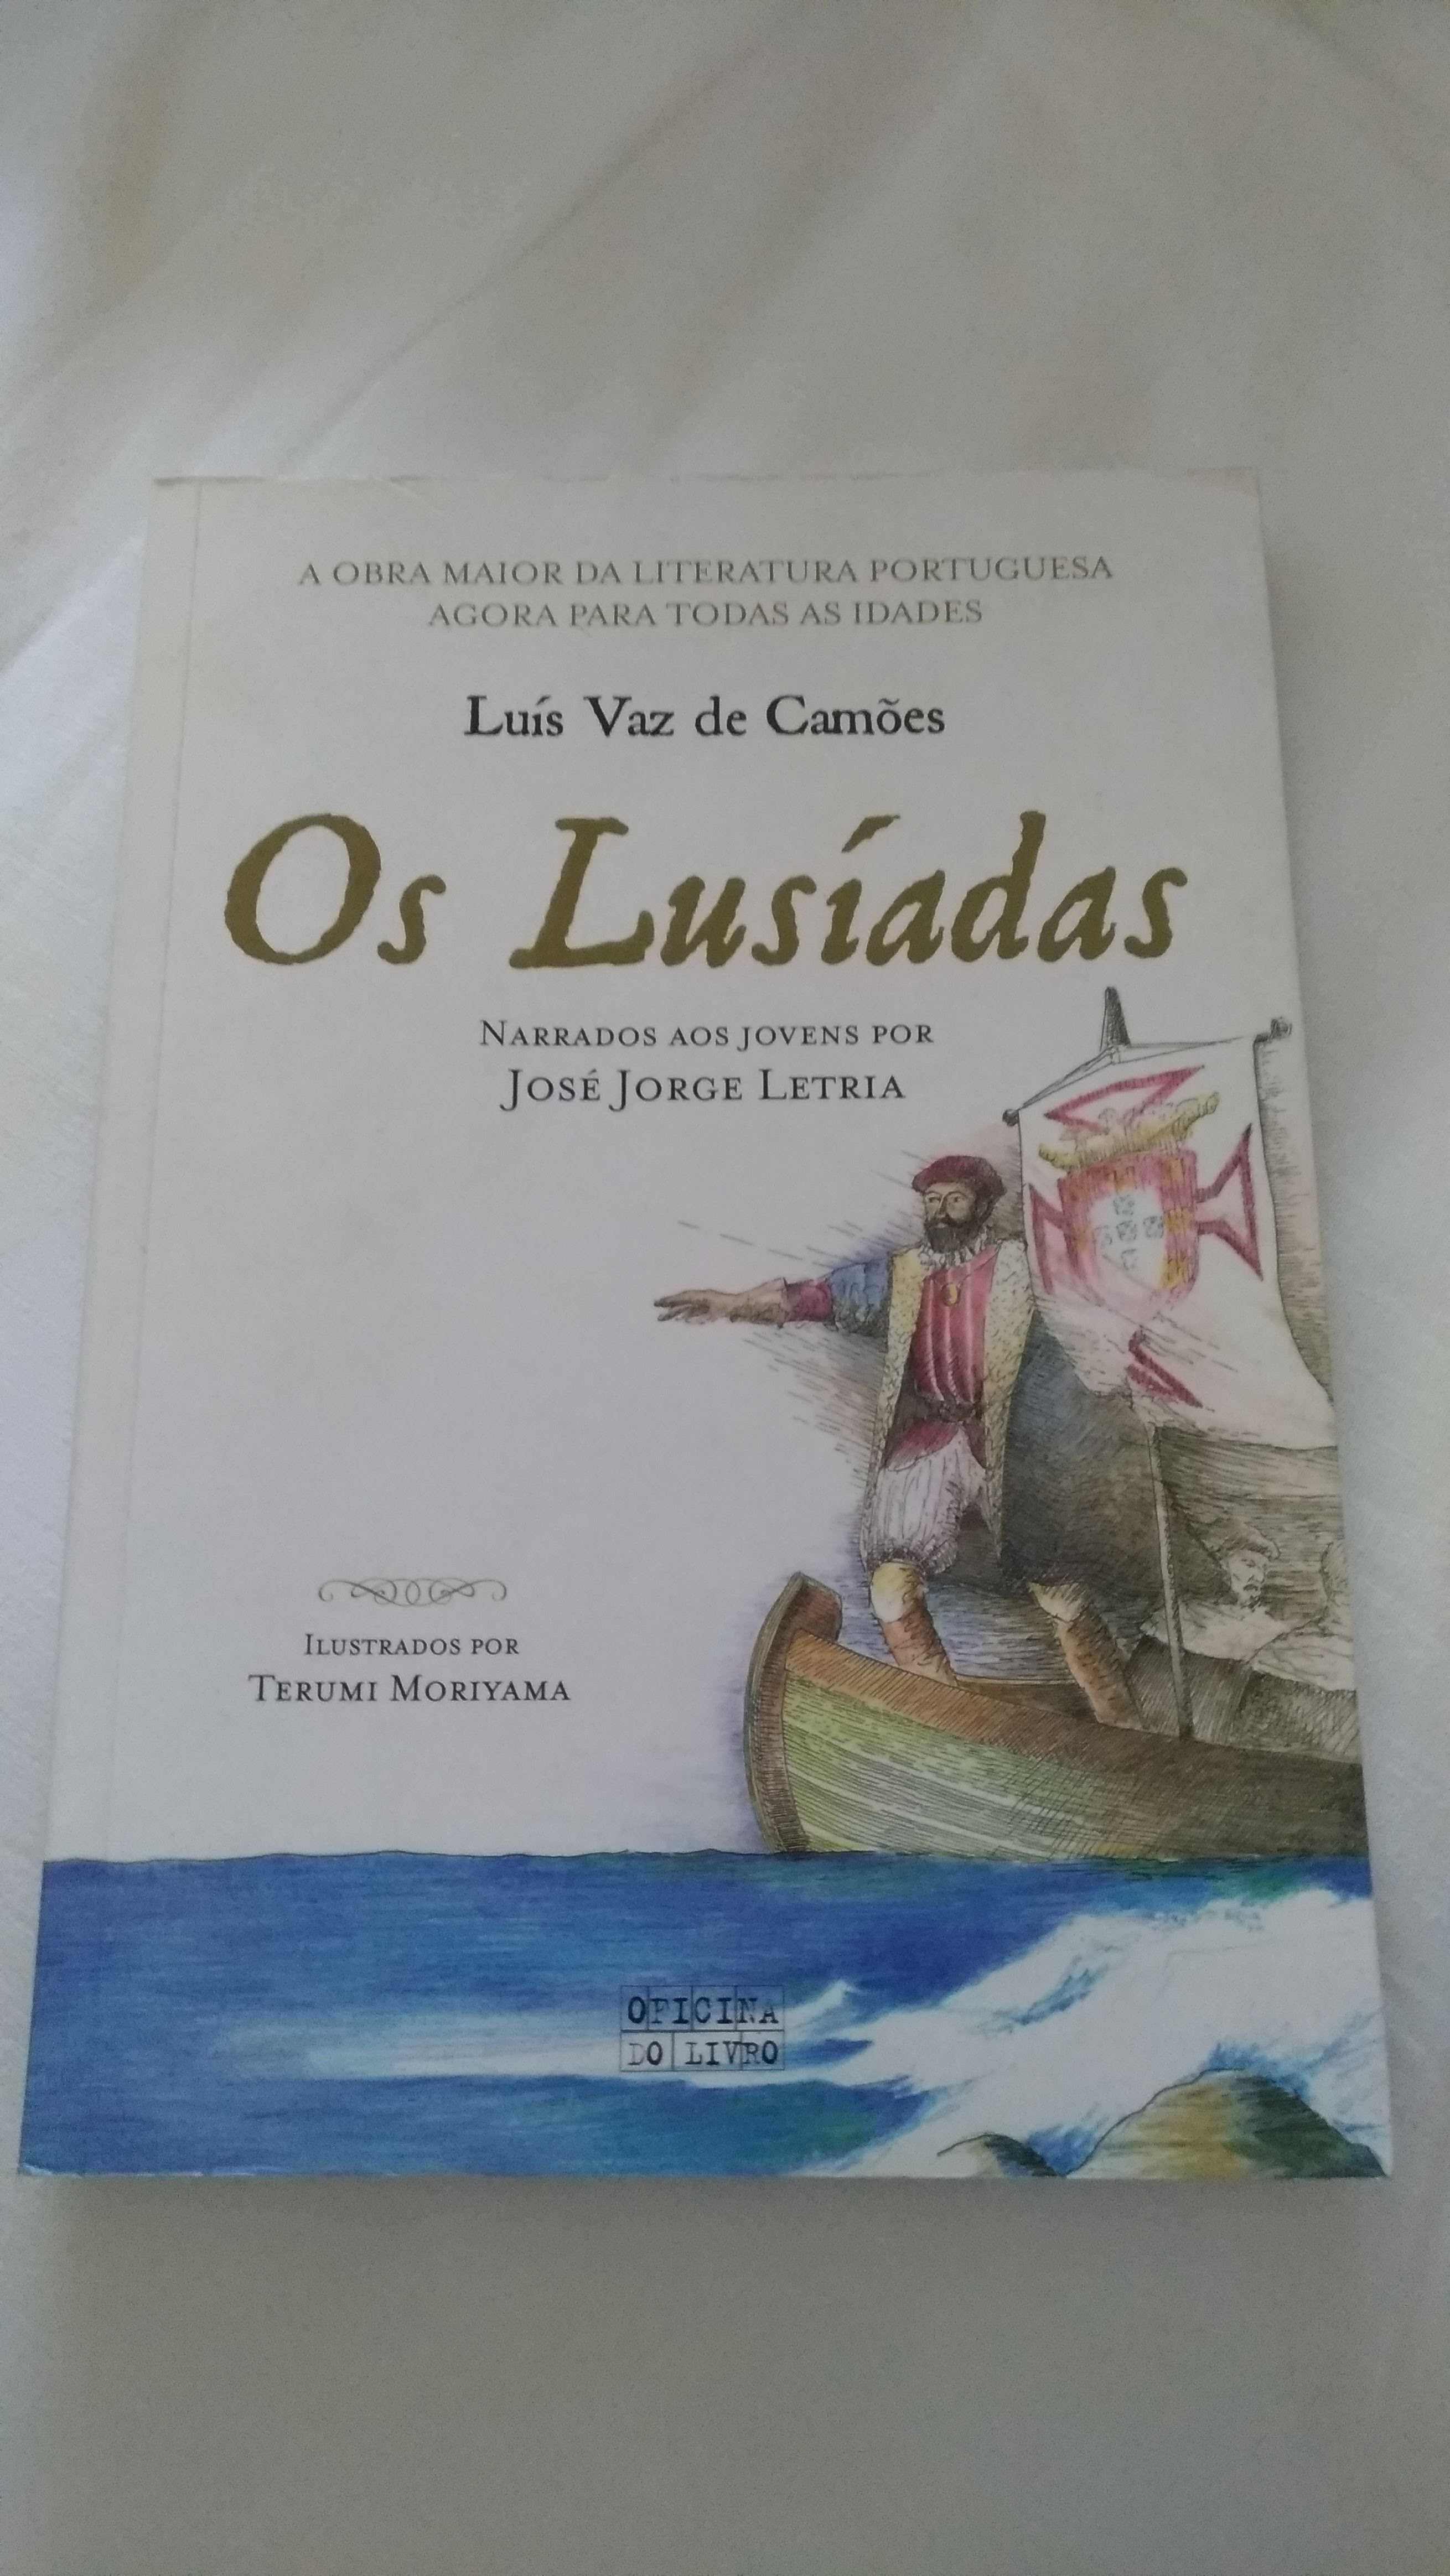 Livro "Os Lusíadas" de José Jorge Letria - Portes Incluídos